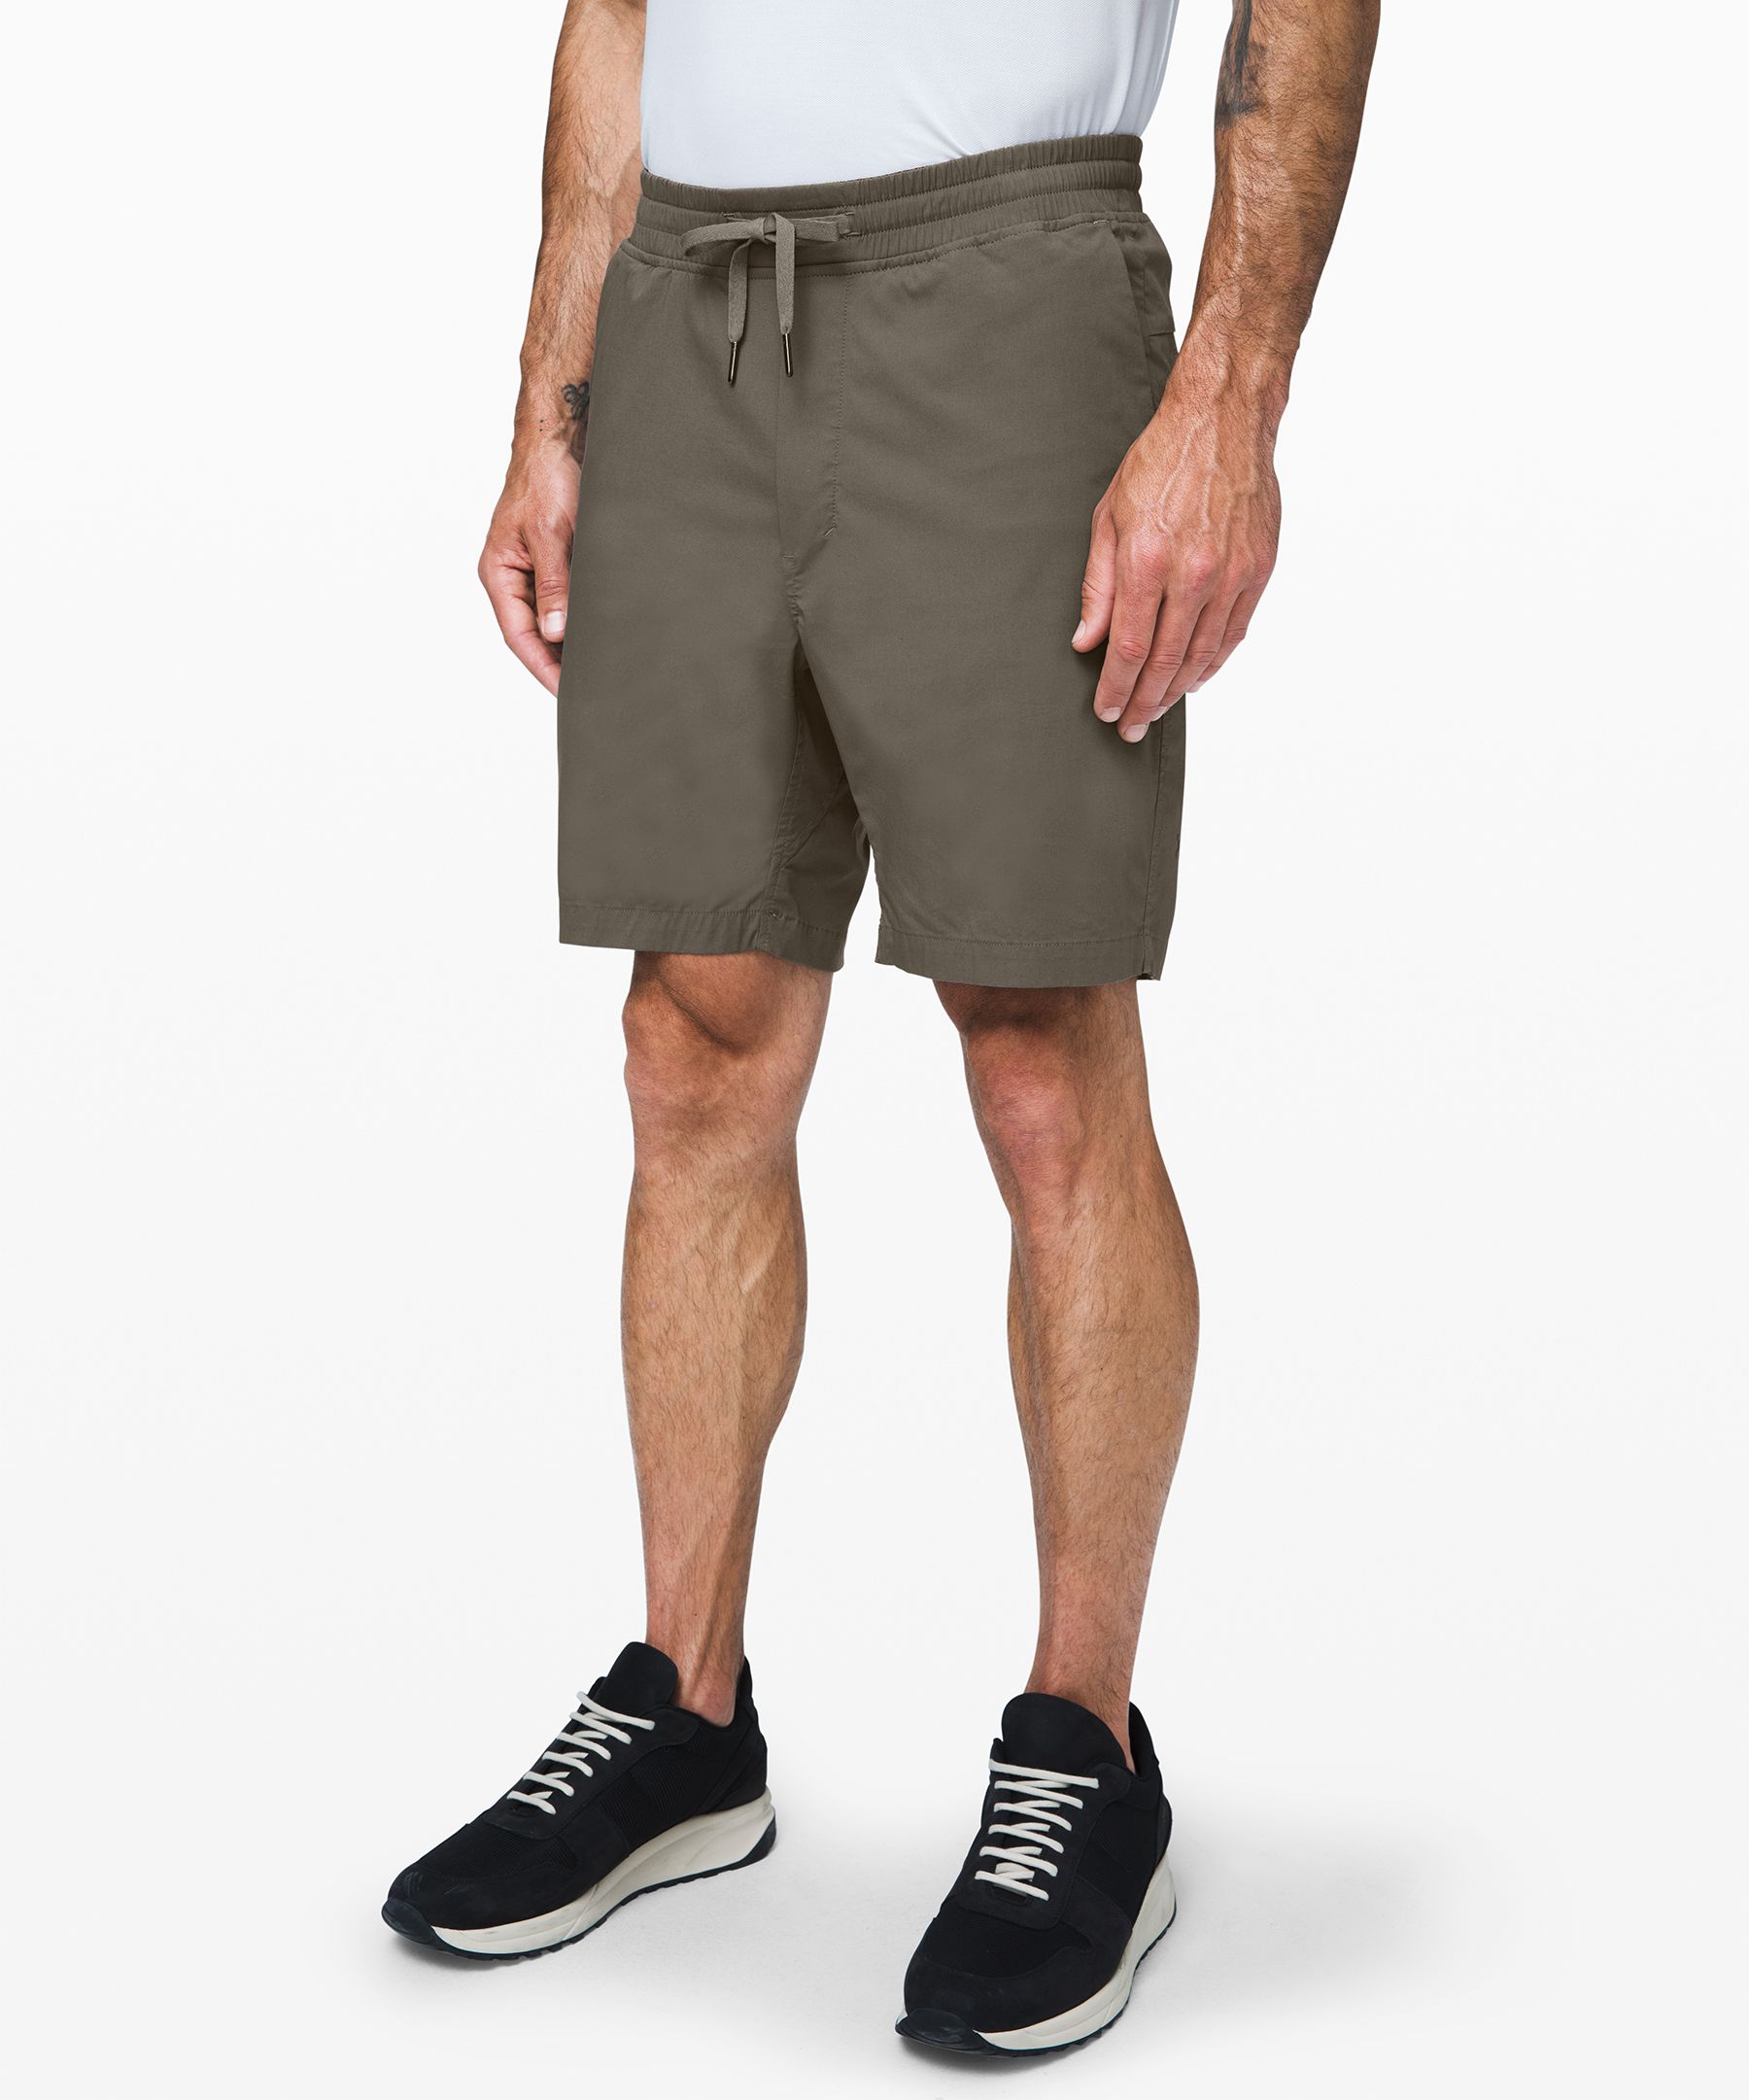 lululemon bowline shorts